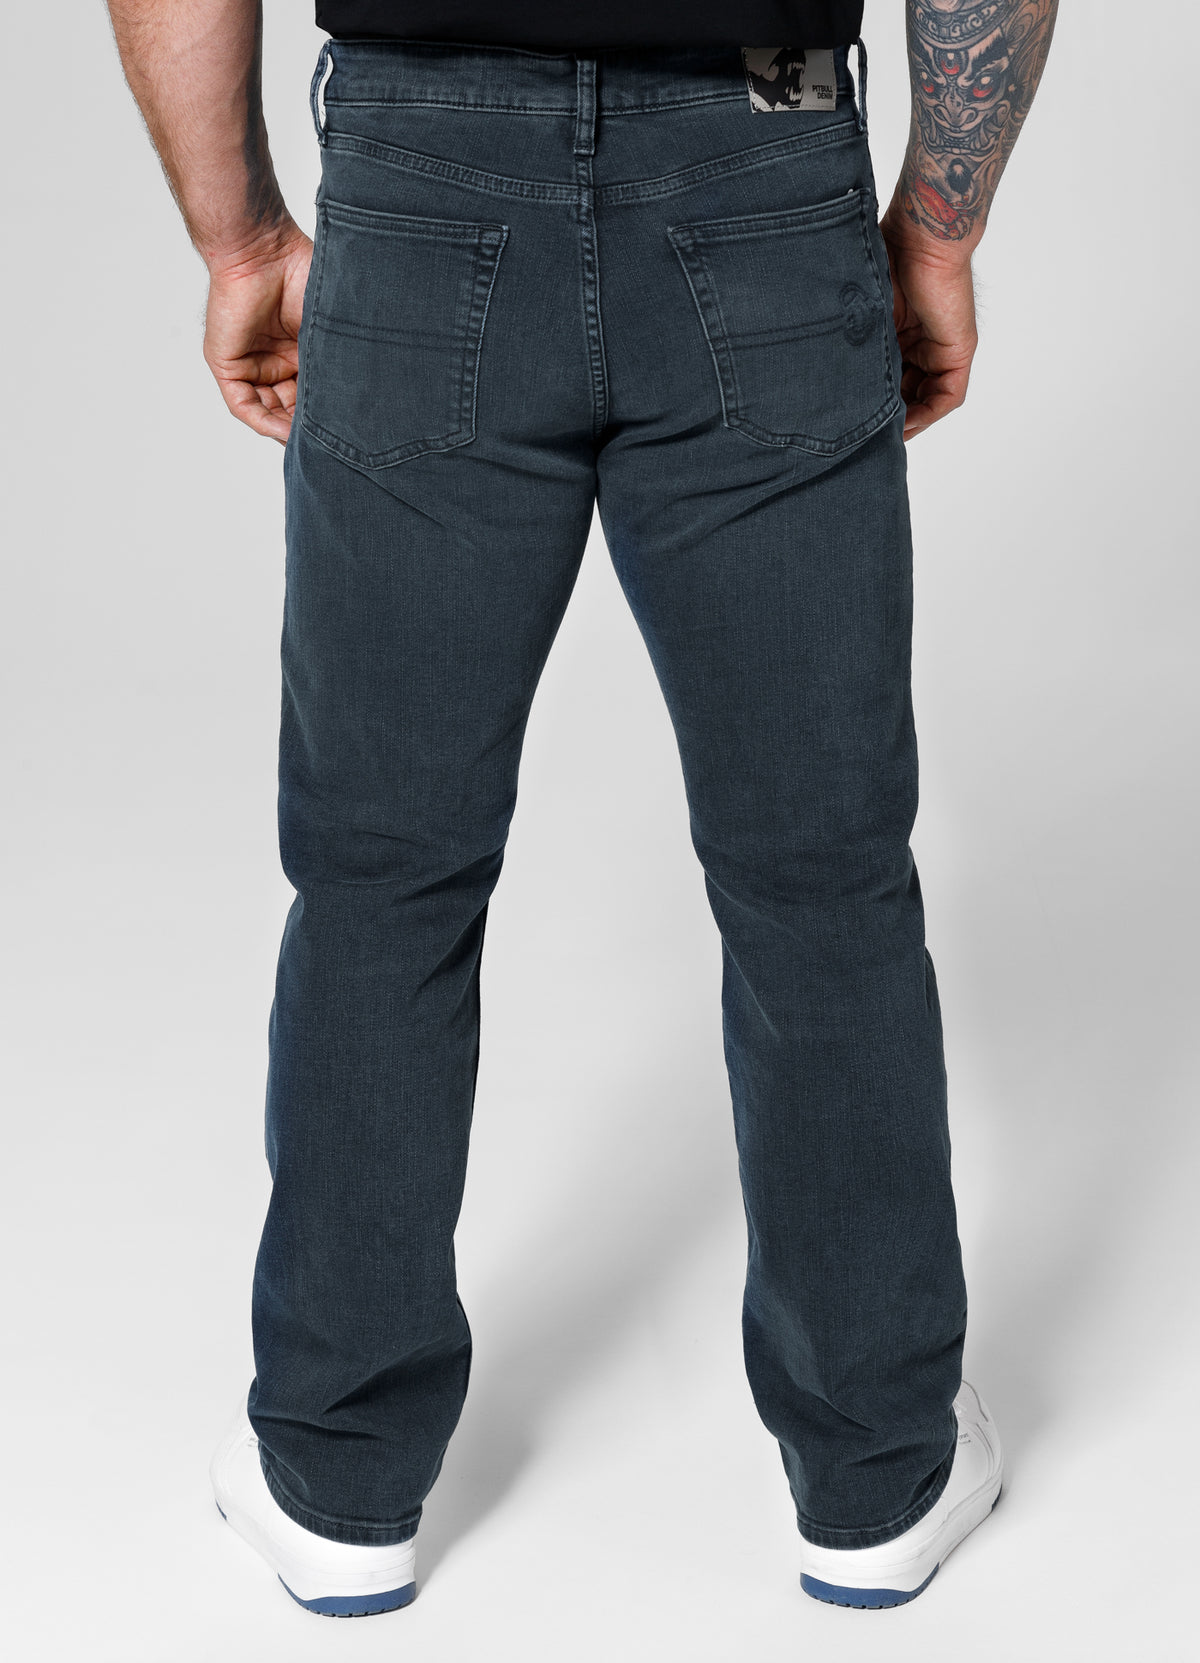 HIGHLANDER Long Dark Wash Jeans